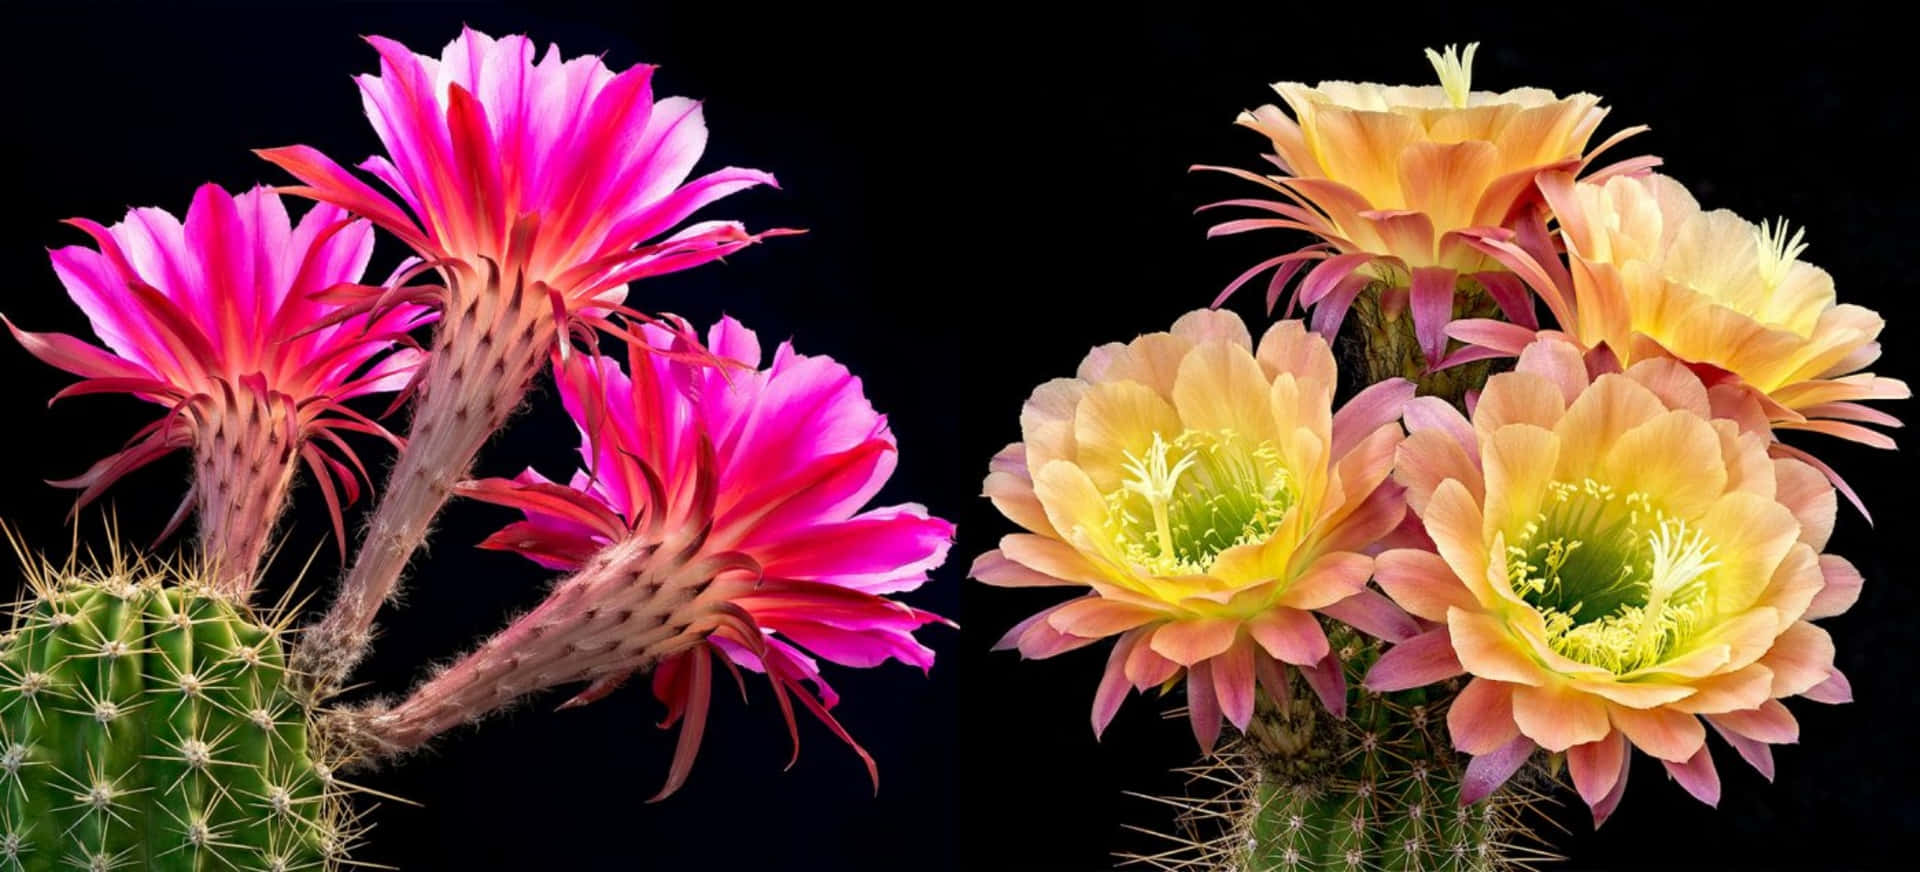 Dosplantas De Cactus Con Flores De Colores Diferentes